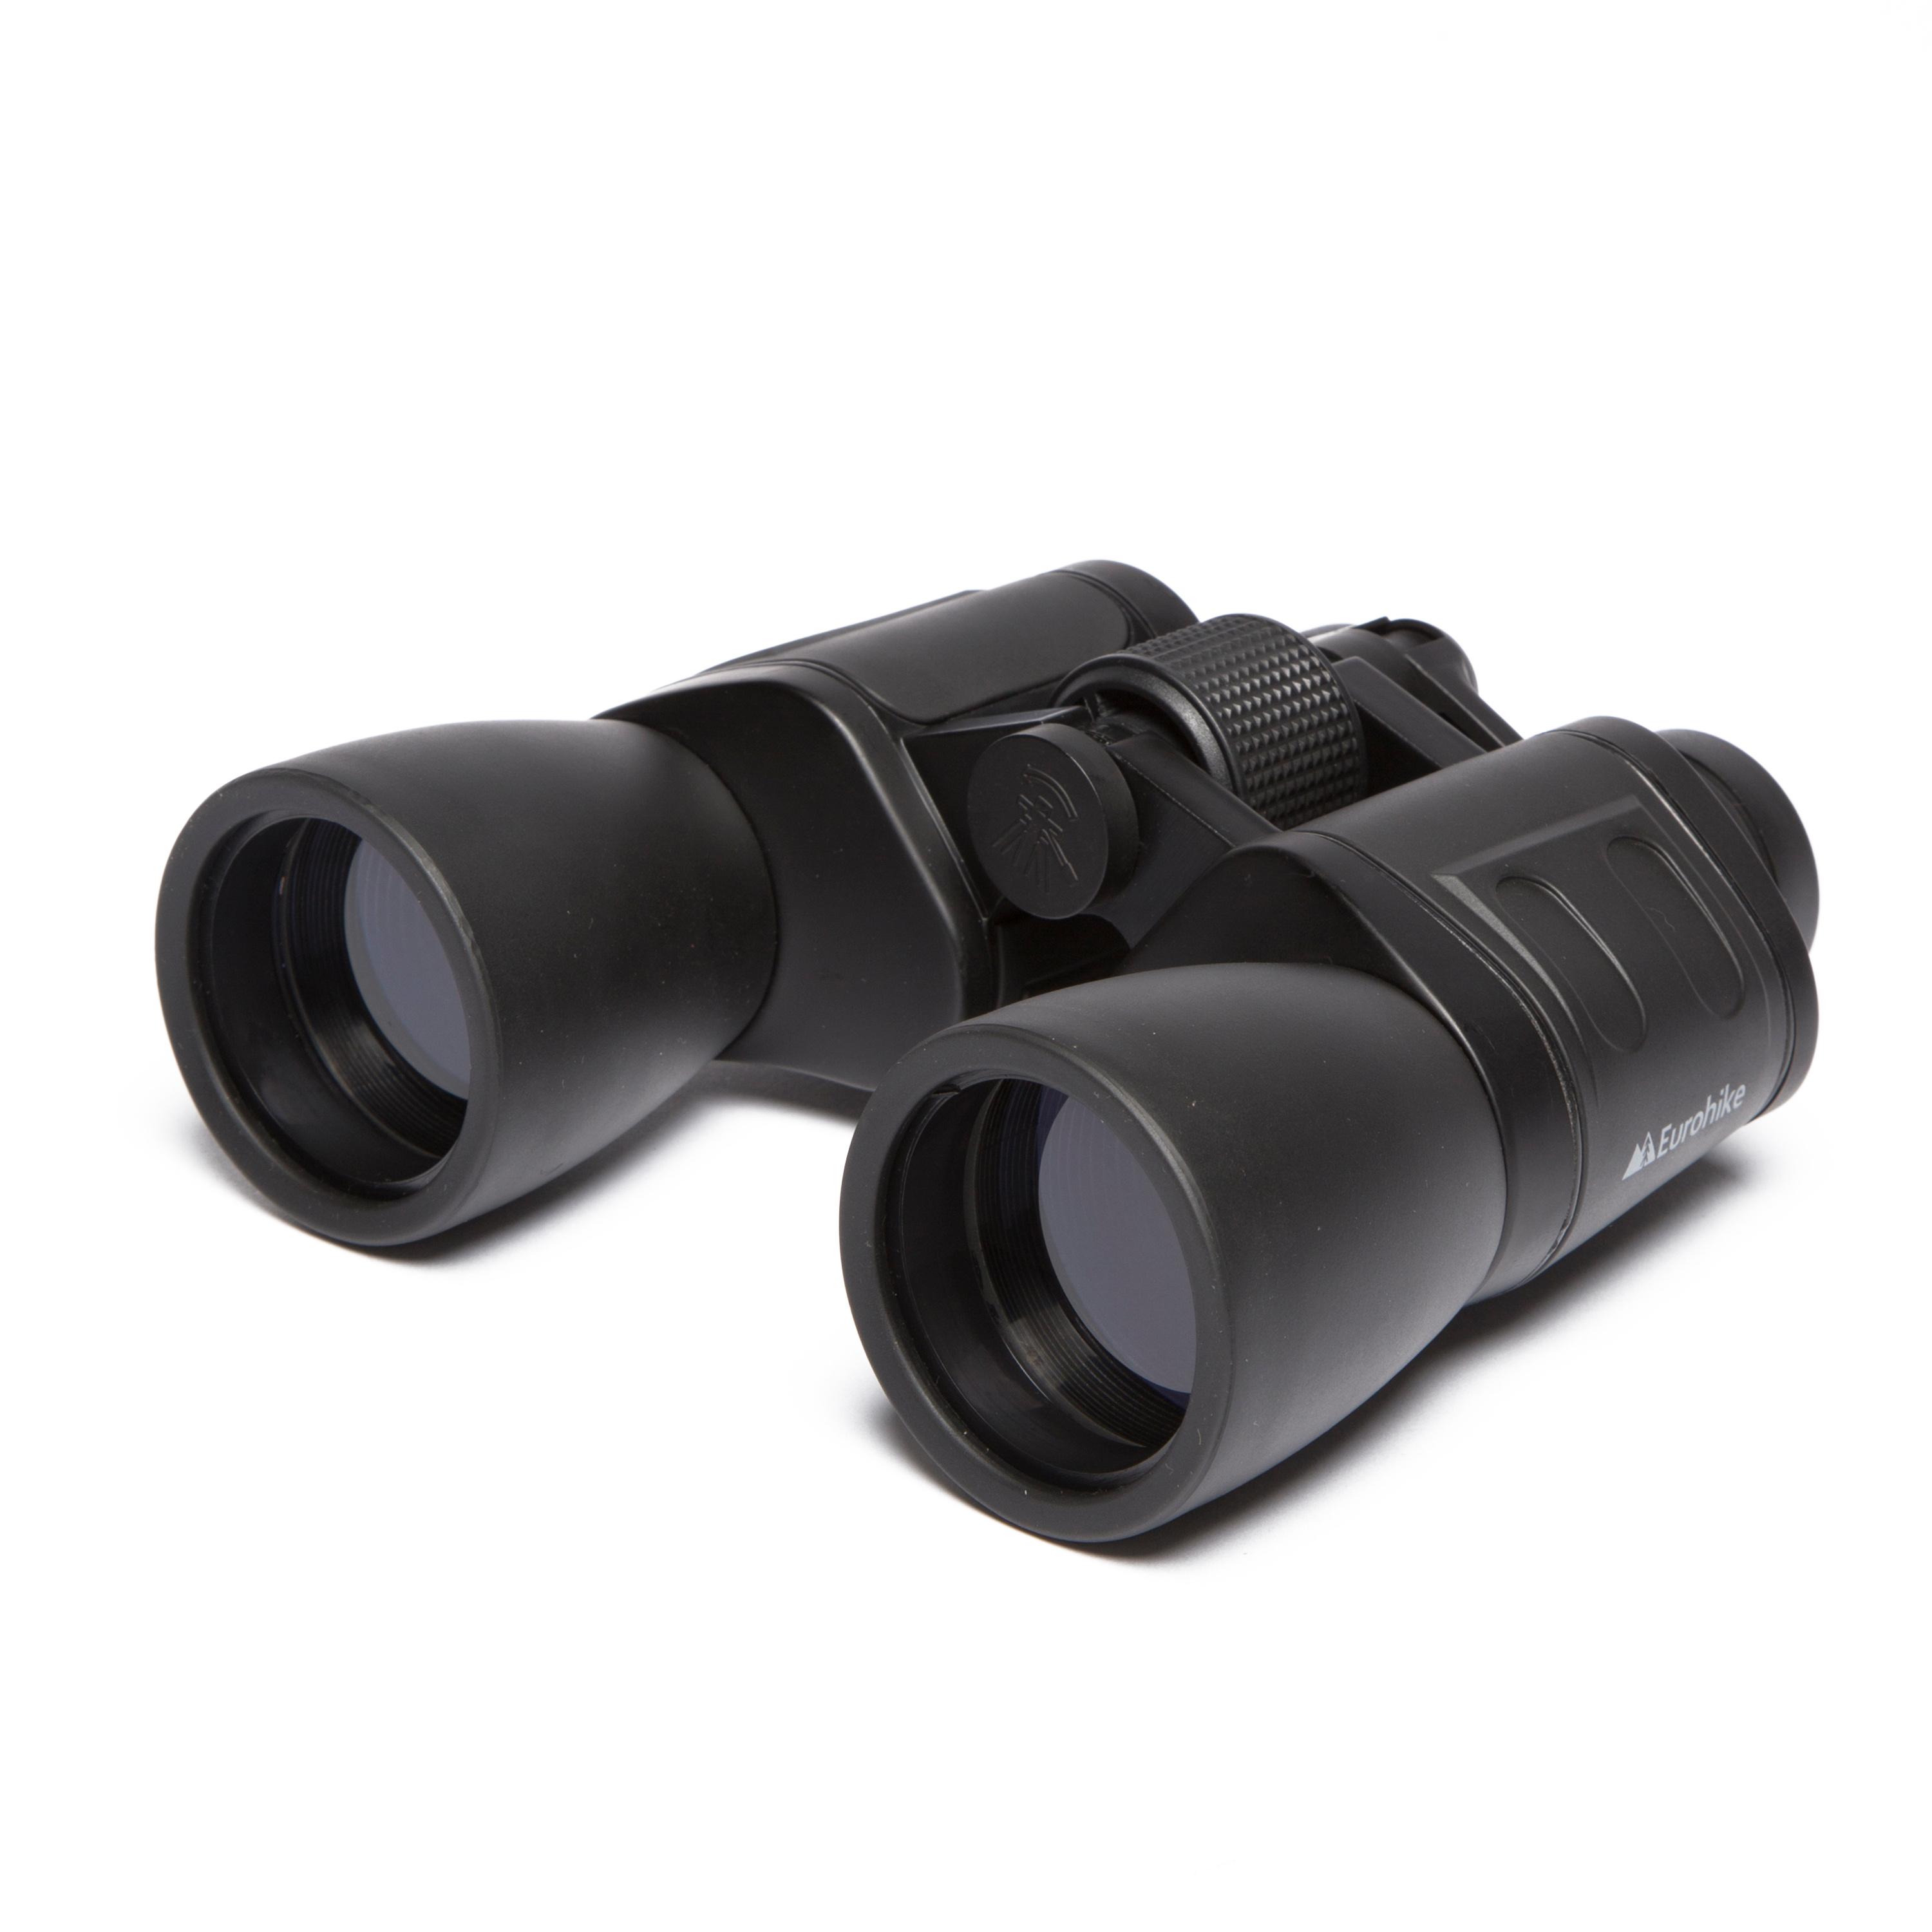 Eurohike Eurohike 10X50 Binoculars - Black, Black